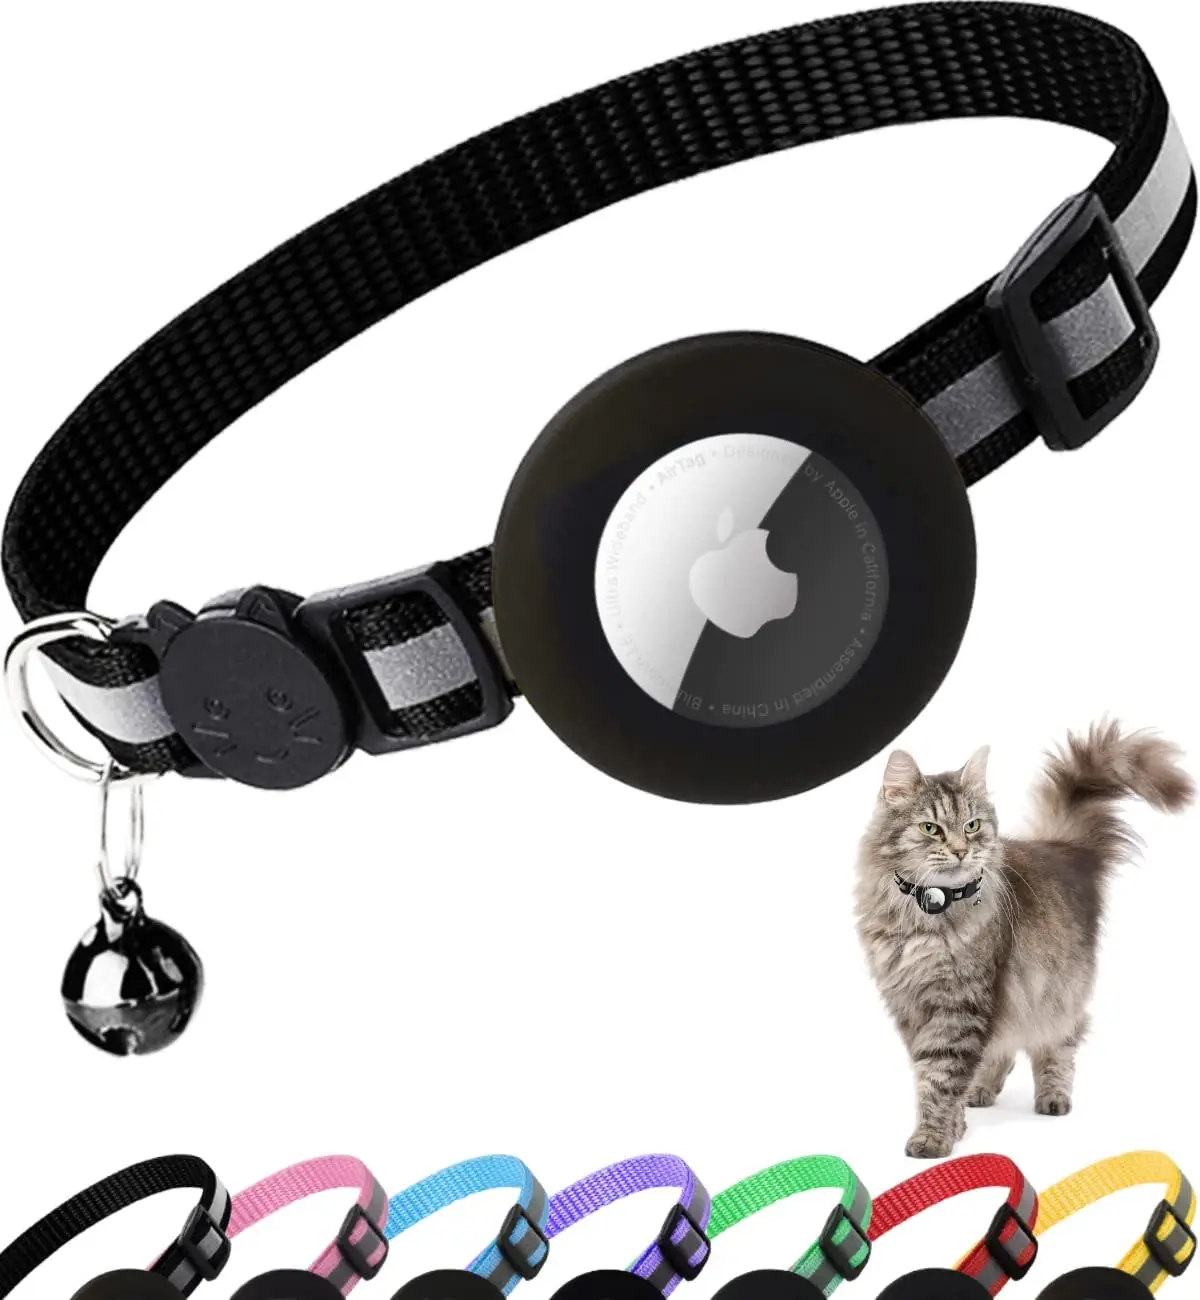  WAPSAT Airtag - Collar de gato con campanas, collar reflectante  GPS para gato, collar de rastreador de gatos antipérdida, collar de cuero  ajustable para gatos macho, niña, gatos o perros pequeños, 